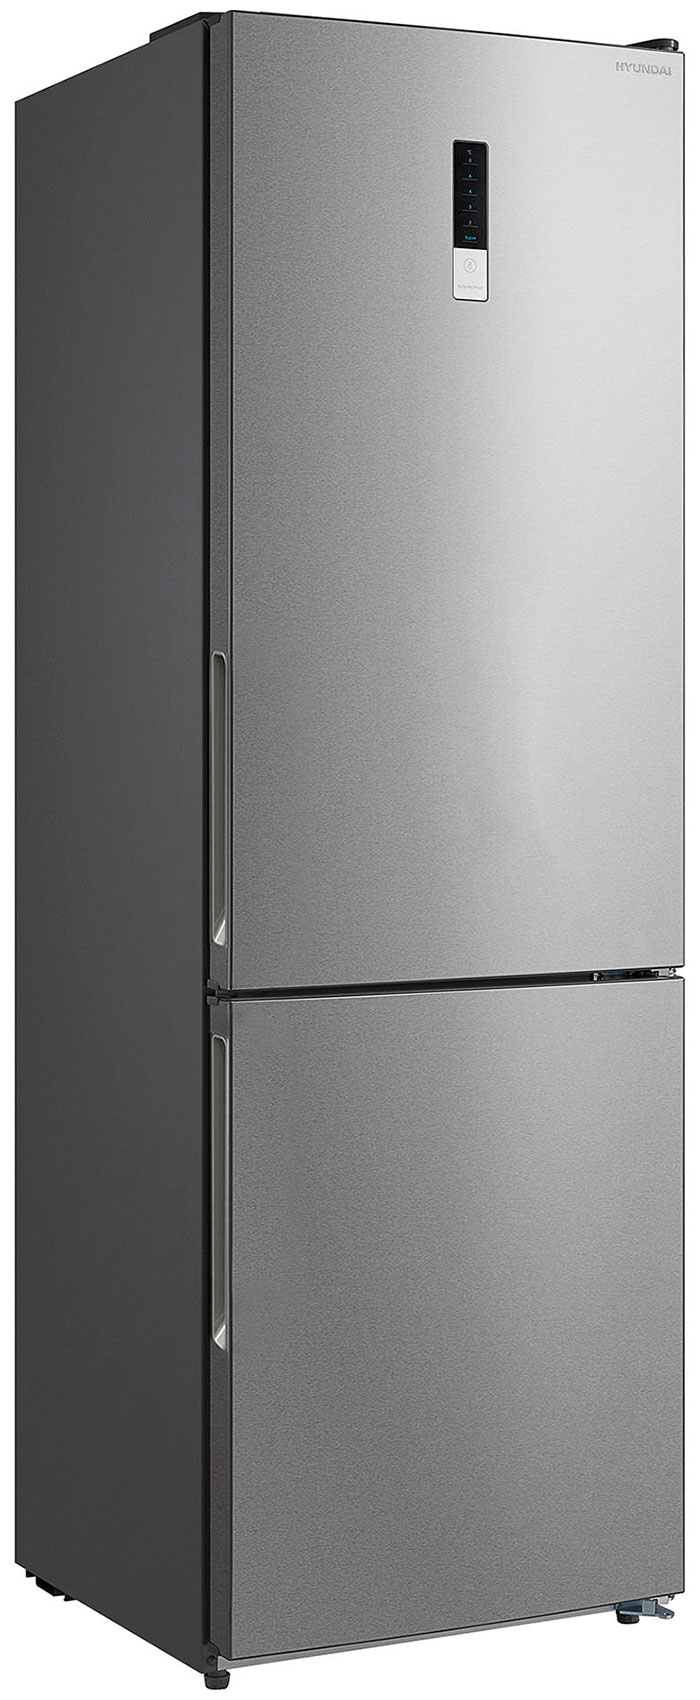 Двухкамерный холодильник Hyundai CC3595FIX нержавеющая сталь холодильник hyundai ct5045fix нержавеющая сталь двухкамерный